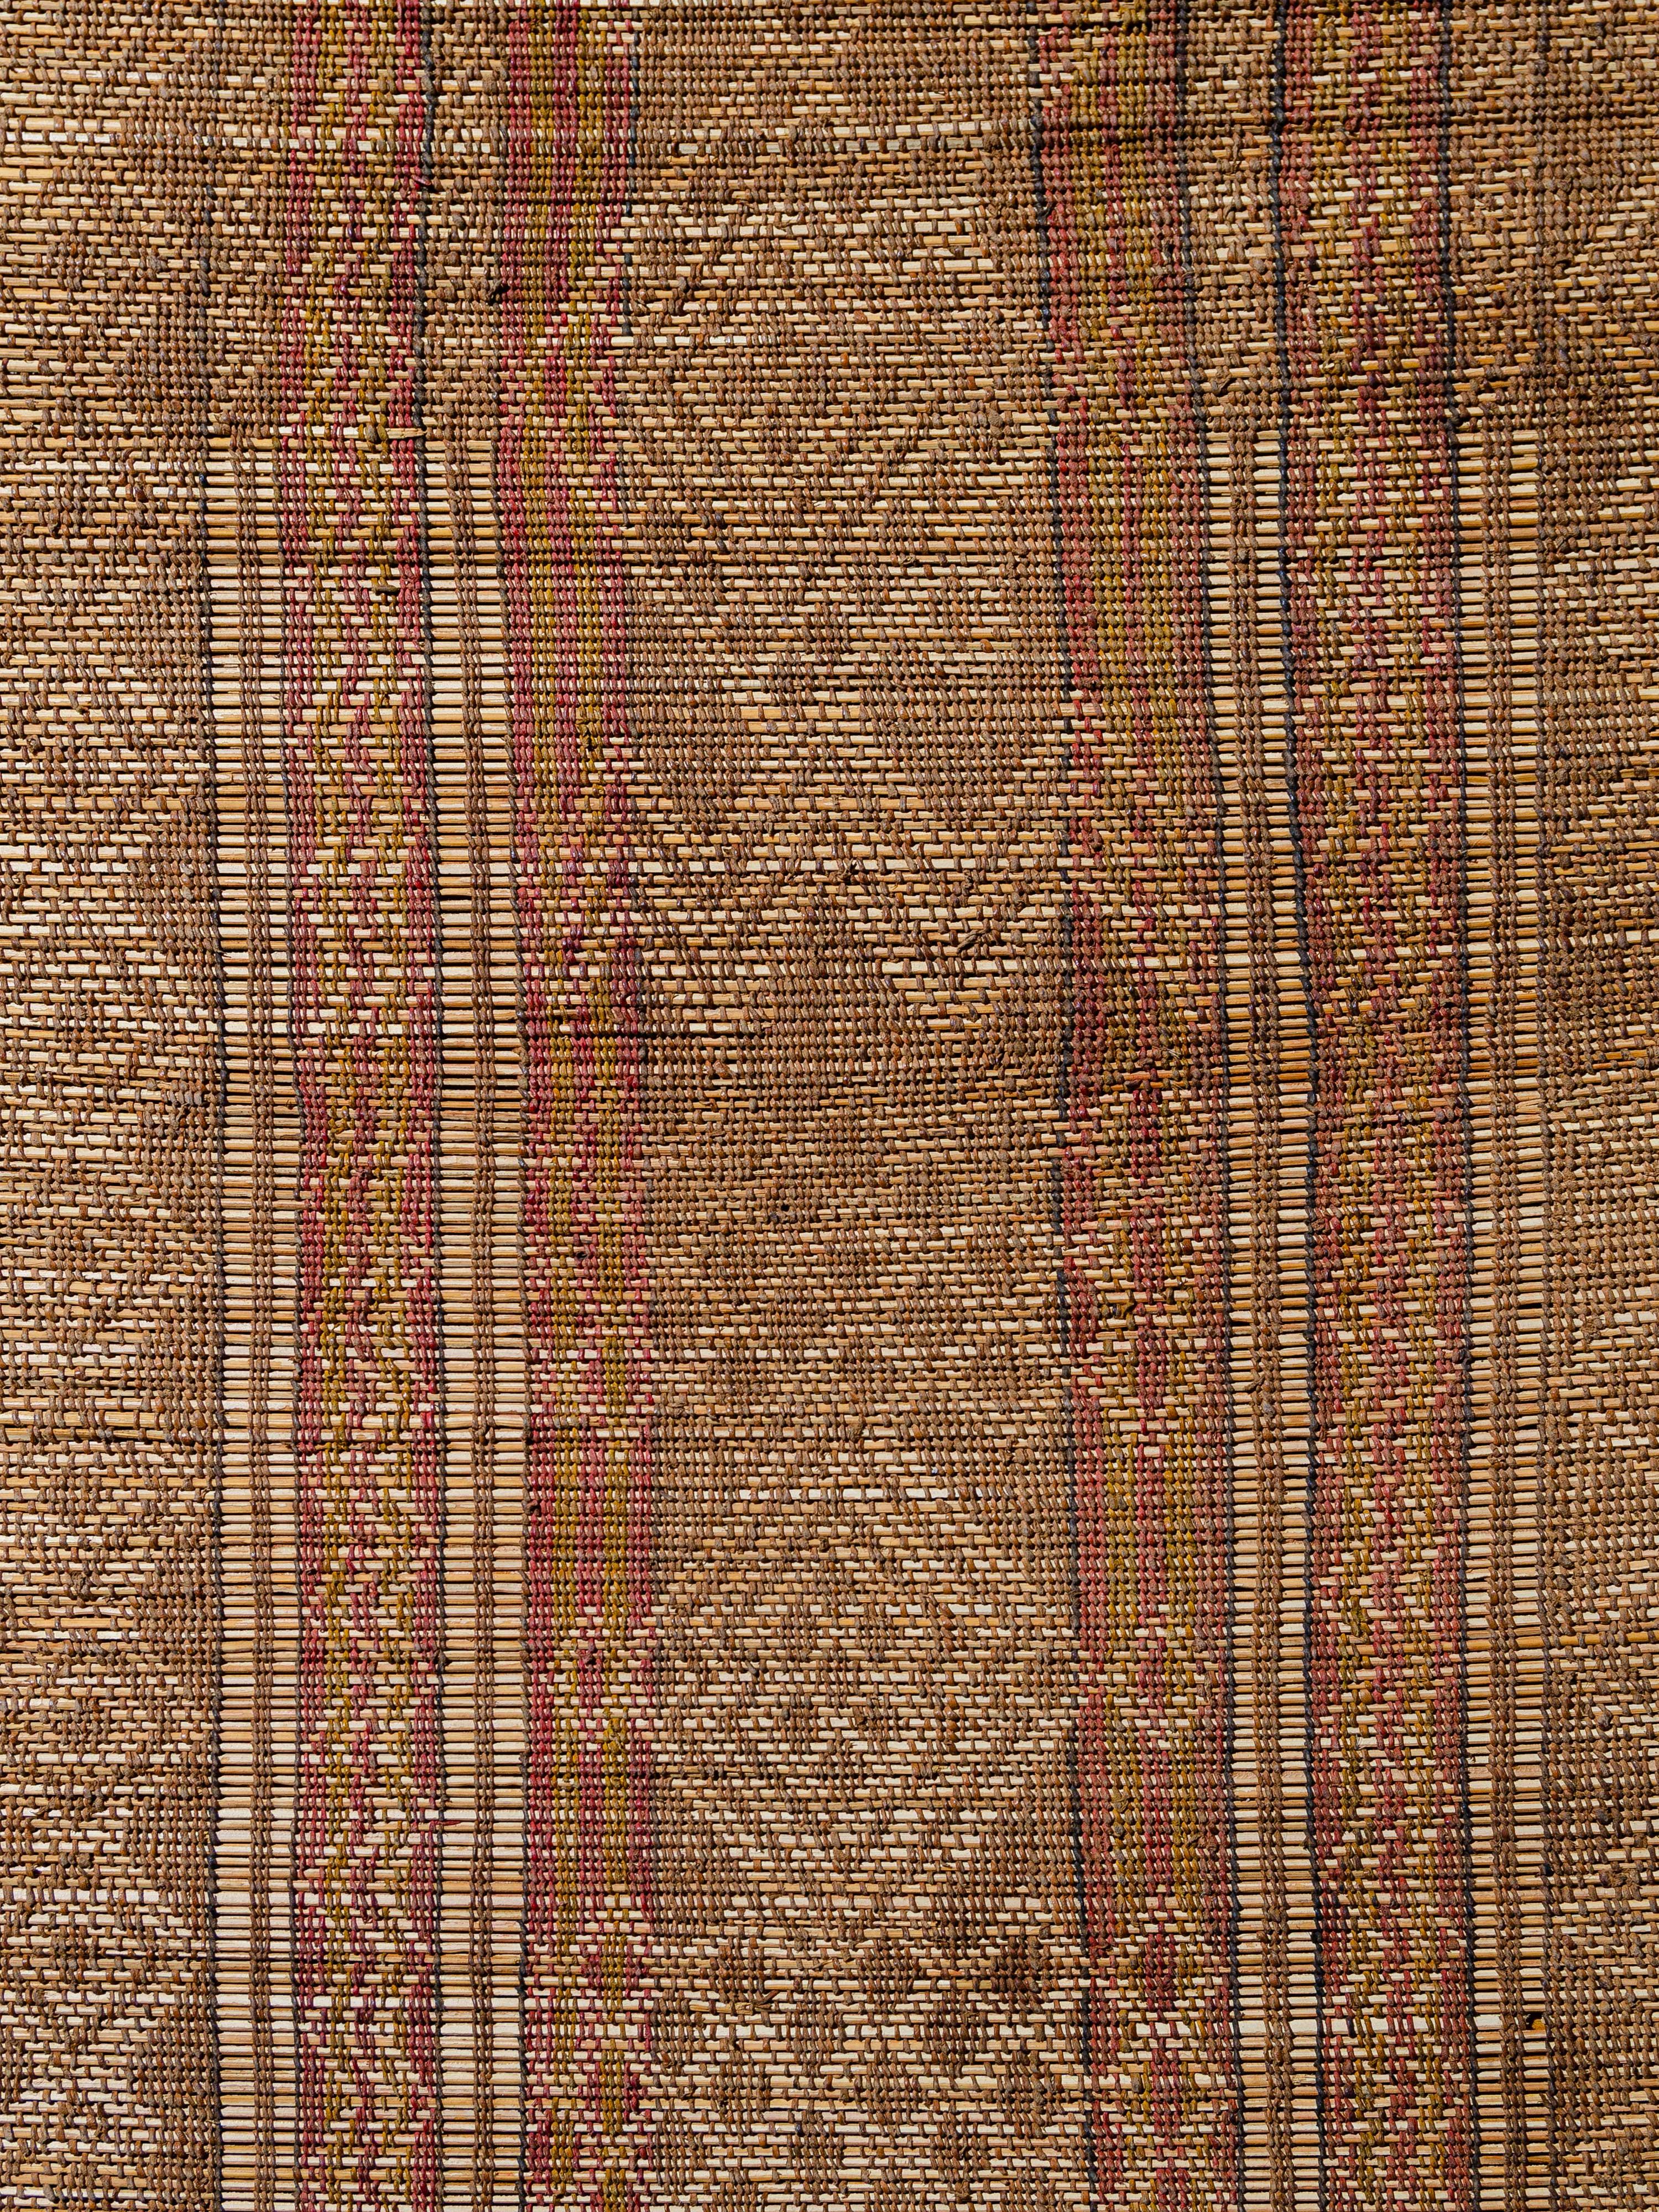 Die von den nomadischen Tuareg-Stämmen Mauretaniens aus Palmenschilf und Kamelleder gewebten Tuareg-Matten bieten eine Alternative zu den traditionellen gewebten Textilbelägen. Dieses Exemplar weist vertikale Bänder mit komplizierten Motiven auf,